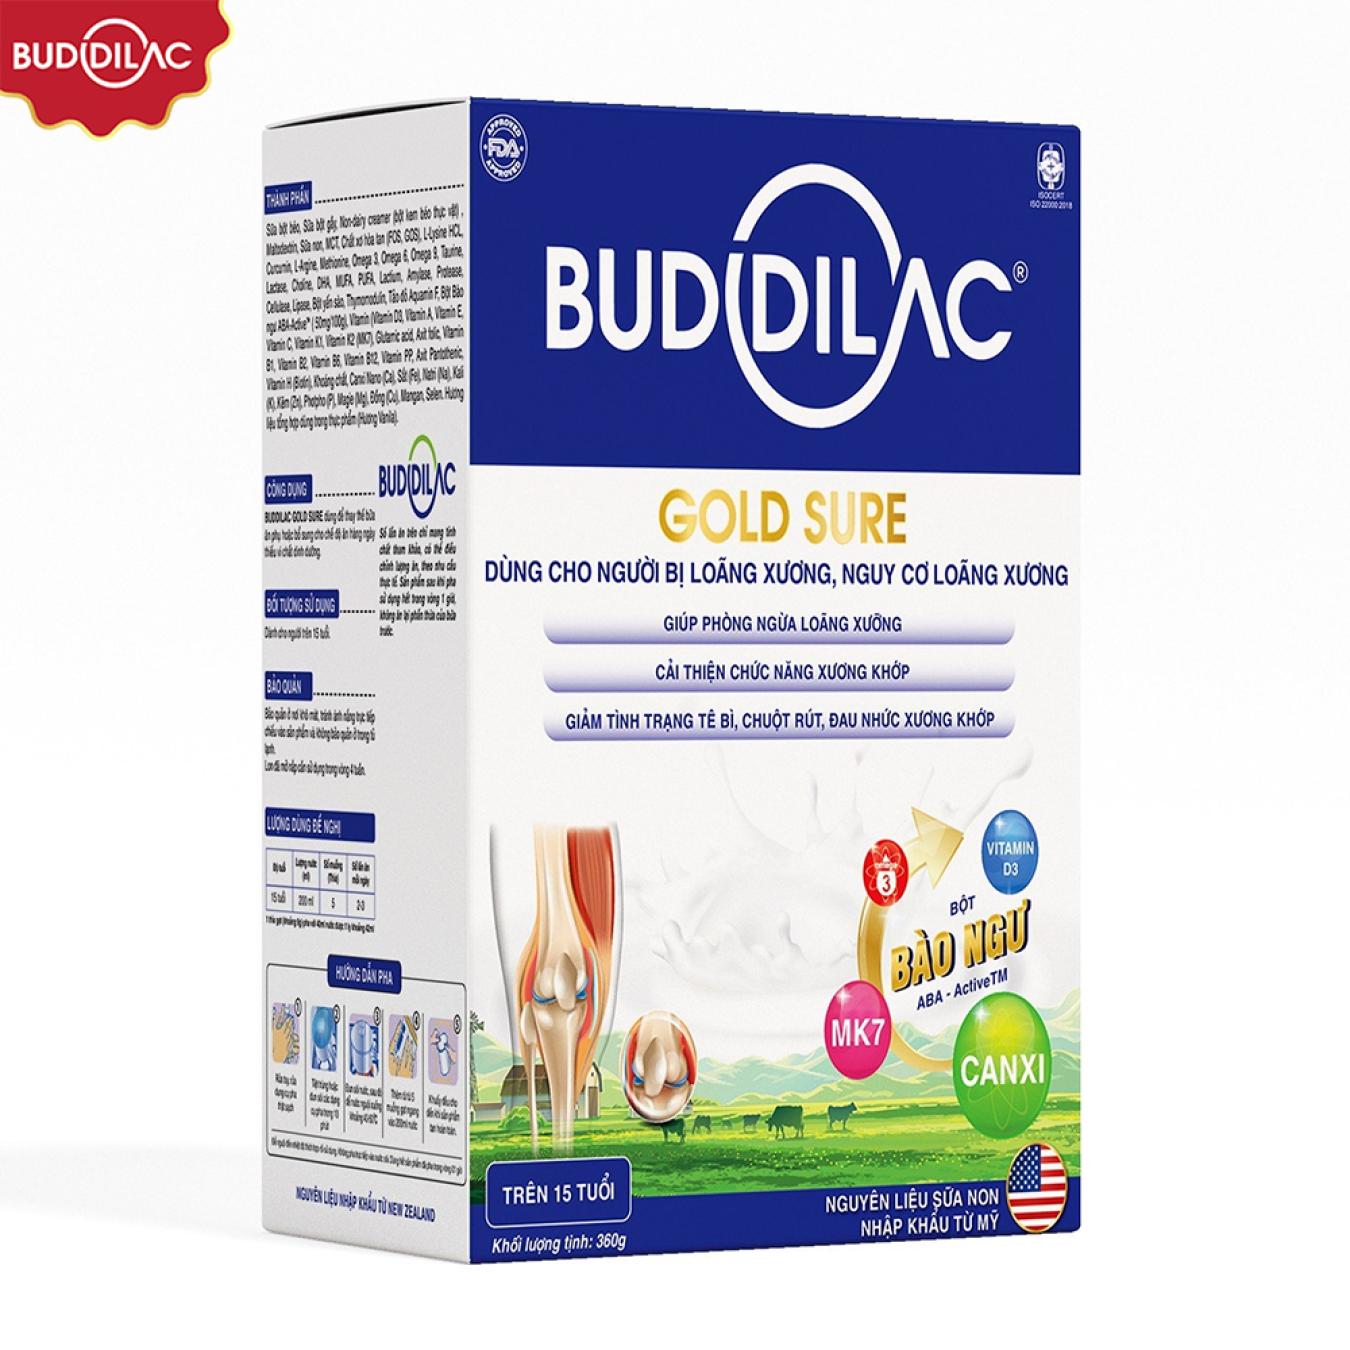 Sữa Buddilac Gold Sure dạng hộp gói - Dành cho người bị loãng xương, nguy cơ loãng xương